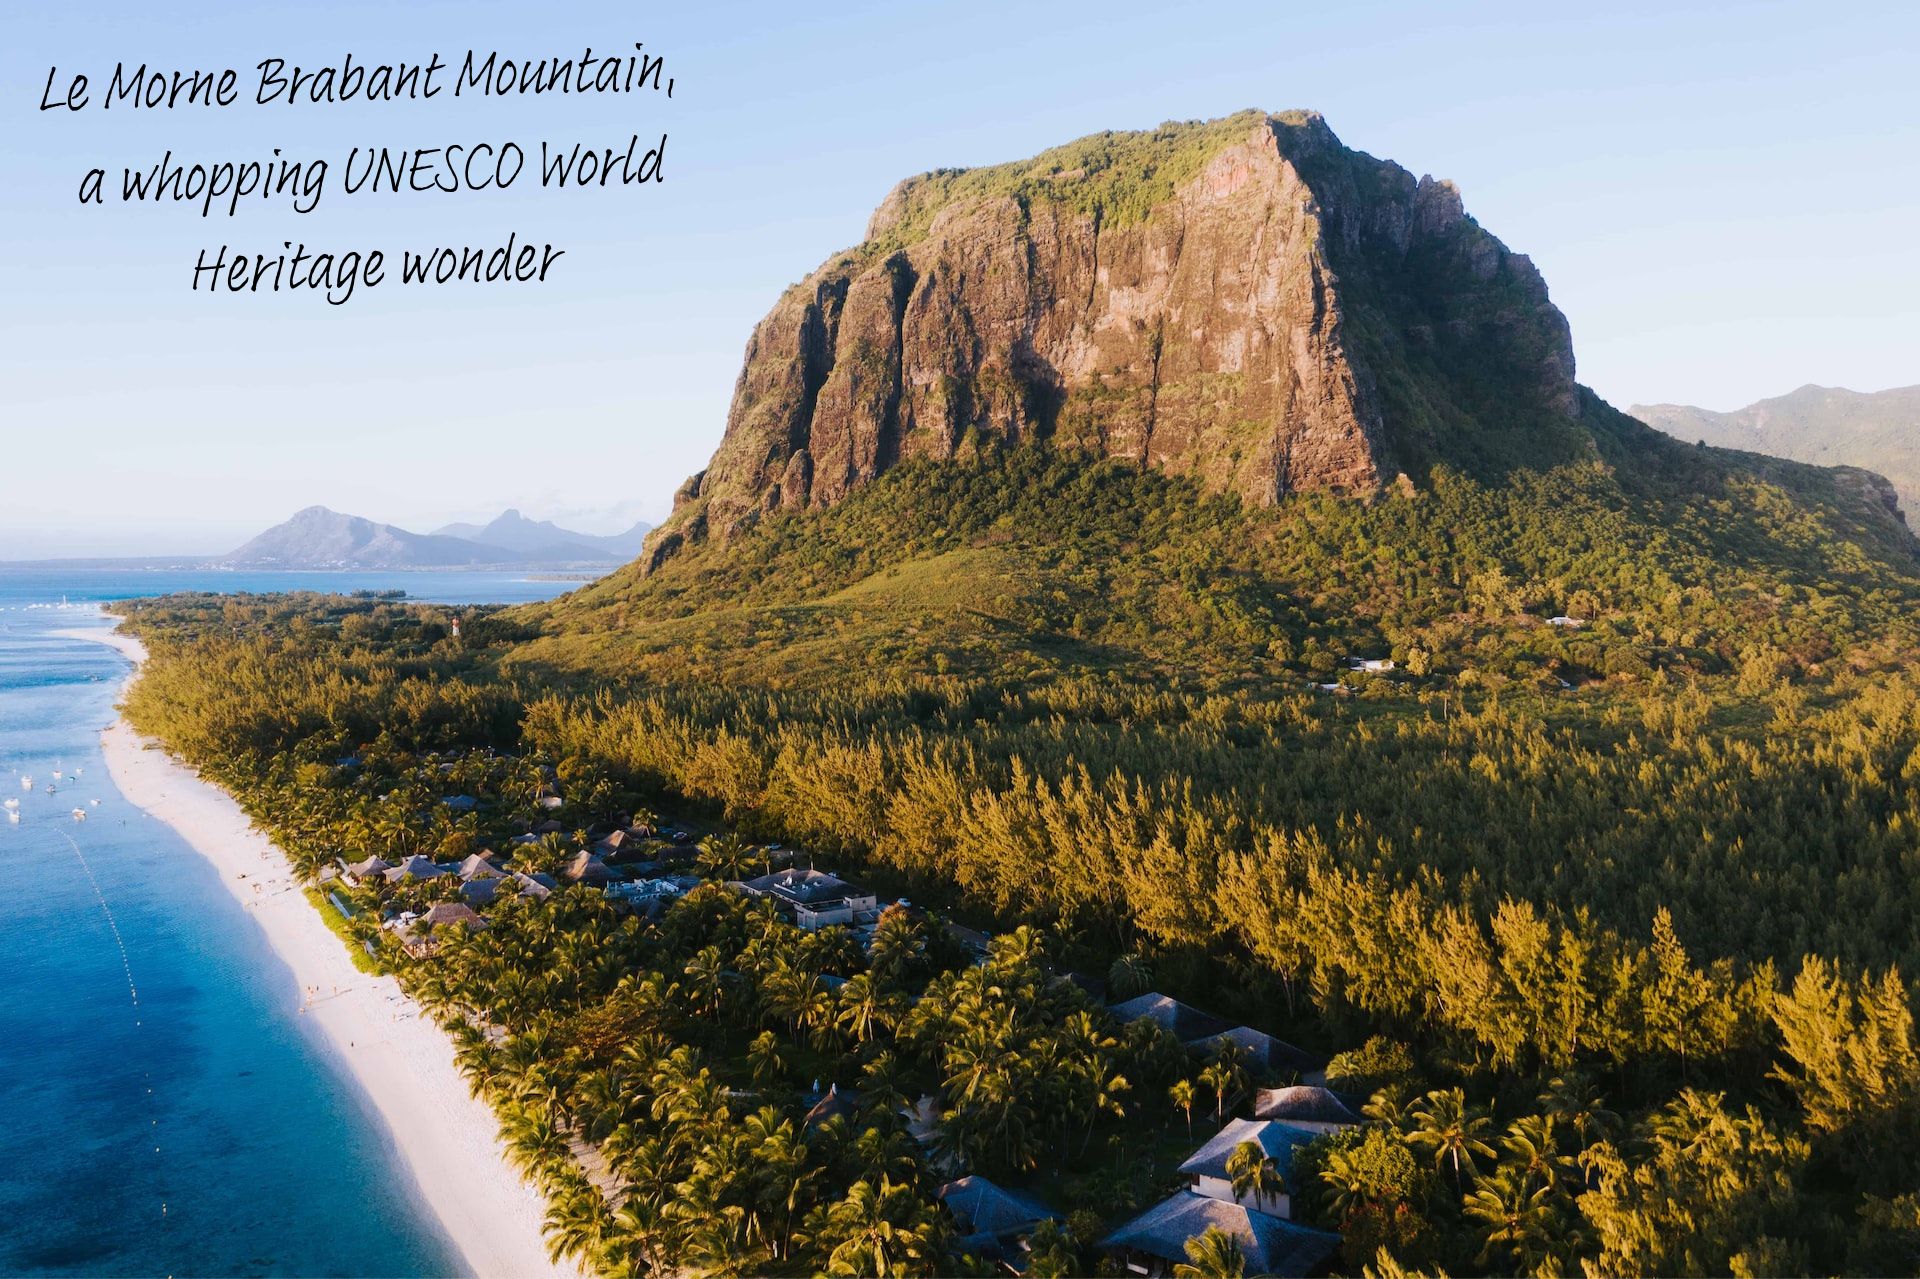 Le Morne Brabant Mountain rises above sea level in Mauritius.